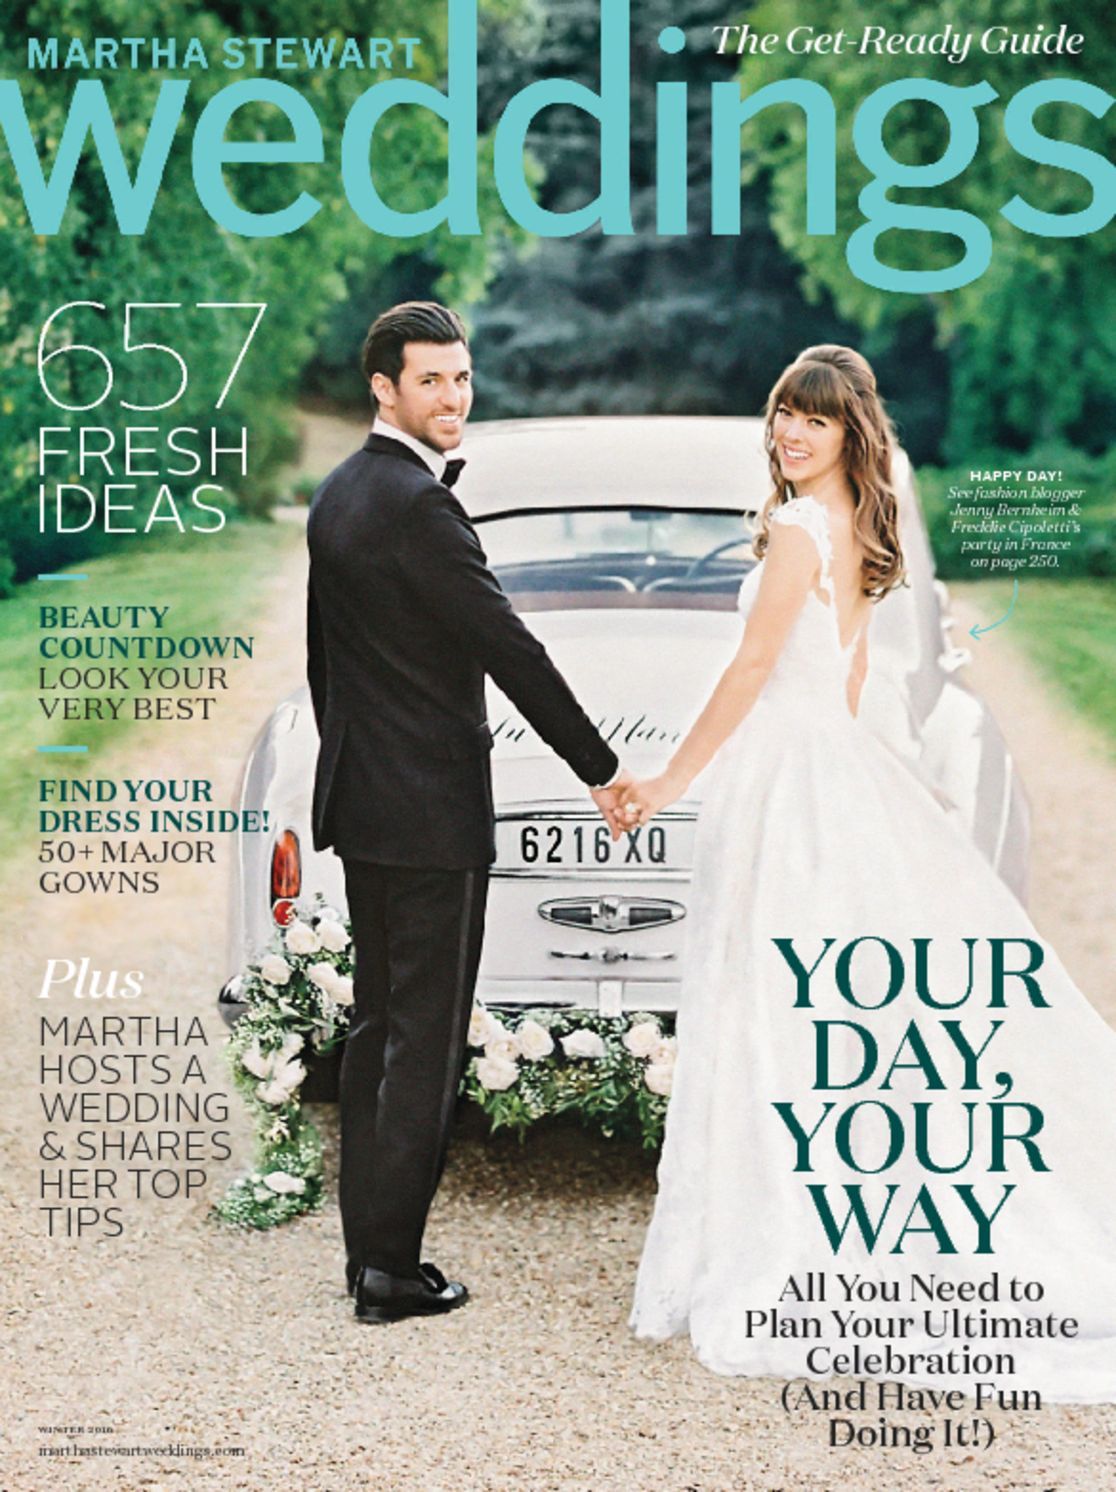 sneak peek - fall issue of Martha Stewart Weddings - Ritzy 